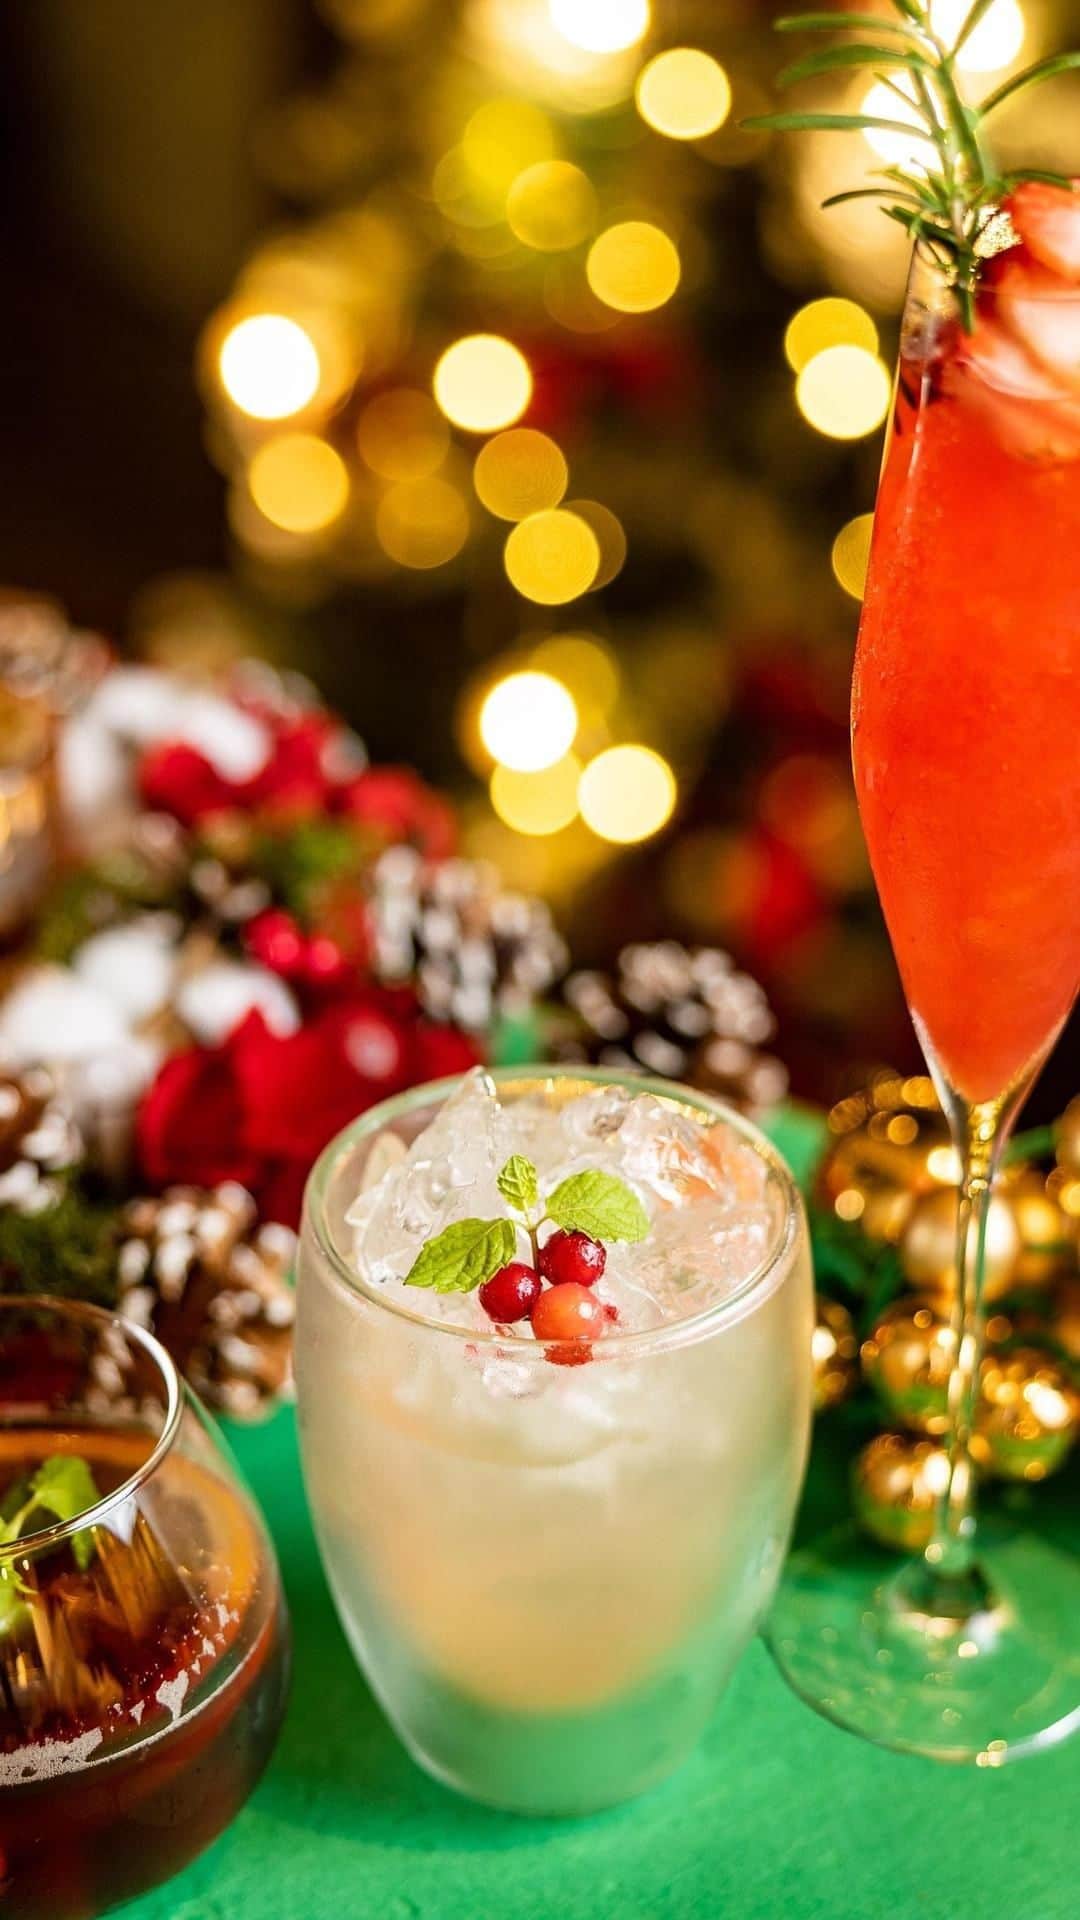 ESTINATE HOTELのインスタグラム：「今年のクリスマスは特別な味わいで彩りませんか？ 期間限定のクリスマスカクテルが登場しました！🎄✨  🍓 Berry Royal（ベリー・ロワイヤル） ラズベリー、ストロベリー、クランベリー、そしてスパークリングワインが織り成す、クリスマスの乾杯にぴったりの一杯。甘酸っぱいフレーバーが贅沢に広がります。  🍈 Paloma de ESTINATE（パローマ・デ・エスティネート） メキシコで愛される伝統的なカクテル、パローマ。ESTINATEが独自の味わいを追求し、フレッシュなグレープフルーツを使用しています。メキシコの風を感じながら、クリスマスをお楽しみください！🇲🇽  🌺 Sangria Spritzer Rouge（サングリア・スプリッツァー・ルージュ） 沖縄らしいフルーツ、グァバやシークヮーサーで作った自家製サングリア。ソーダで割り、爽やかな味わいに仕上げました。南国気分で素敵なひと時を過ごしましょう！🌴  今年のクリスマスは、ぜひお楽しみください！  ・  Have you finalized your Christmas plans this year? 🍹✨ Introducing our limited-time Christmas cocktails! 🎄  🍓 Berry Royal A perfect toast for Christmas, combining raspberry, strawberry, cranberry, and sparkling wine. Indulge in the luxurious flavors of sweet and tangy berries with a touch of effervescence.  🍈 Paloma de ESTINATE Experience the most famous Mexican cocktail, Paloma, with a unique twist from ESTINATE. Crafted with fresh grapefruit, it captures the original essence that makes it a true holiday delight. Enjoy Christmas with a touch of Mexican flair!  🌺 Sangria Spritzer Rouge A homemade sangria featuring Okinawan fruits like guava and shikuwasa. Refreshingly blended with soda, it delivers a crisp and delightful taste. Transport yourself to a tropical paradise and savor the festive moments!  Add a special touch to your Christmas with these unique flavors!  今年的聖誕計畫已經確定了嗎？ 推薦我們限時的聖誕雞尾酒！🎄  🍓 Berry Royal 一款完美的聖誕乾杯，結合了覆盆子、草莓、蔓越莓和起泡酒。沉浸在甜蜜而酸爽的莓果風味中，帶有一絲氣泡的奢華感受。  🍈 Paloma de ESTINATE 體驗最著名的墨西哥雞尾酒之一，Paloma，帶有艾斯蒂納特獨特的風味。使用新鮮的葡萄柚製作，捕捉到原汁原味，是一種真正的節日美味。在聖誕中感受一點墨西哥風情！  🌺 Sangria Spritzer Rouge 採用獨家製作的桑格利亞，使用芭樂、柳橙等琉球特有的水果。混合蘇打水，味道清新宜人。讓自己置身於熱帶天堂，享受節慶時光！」